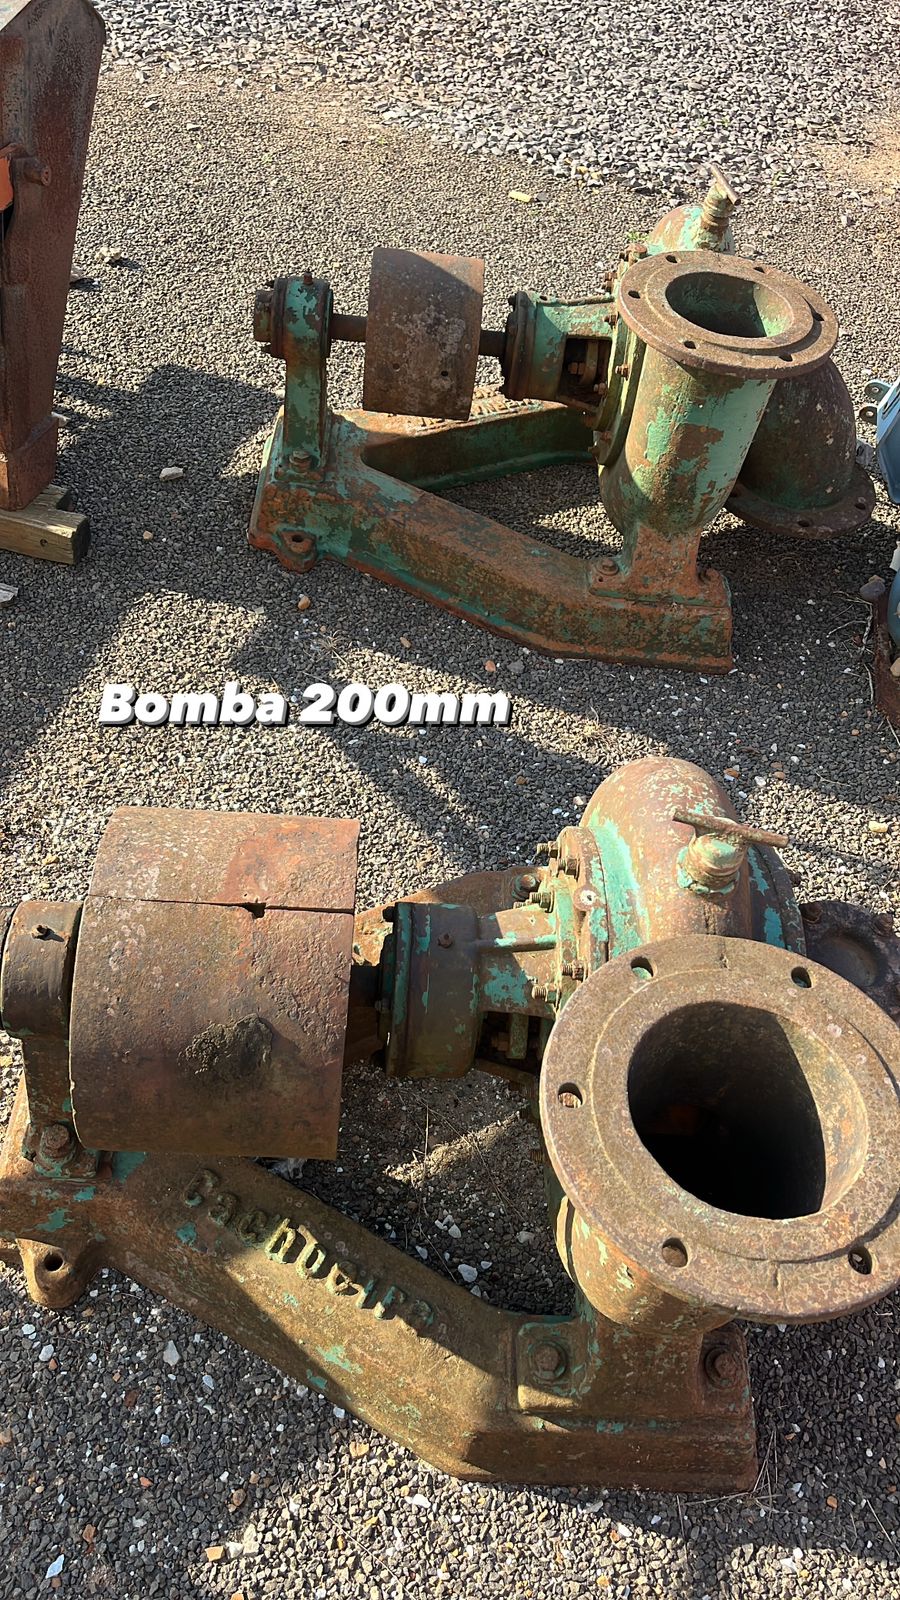 Bomba 200mm